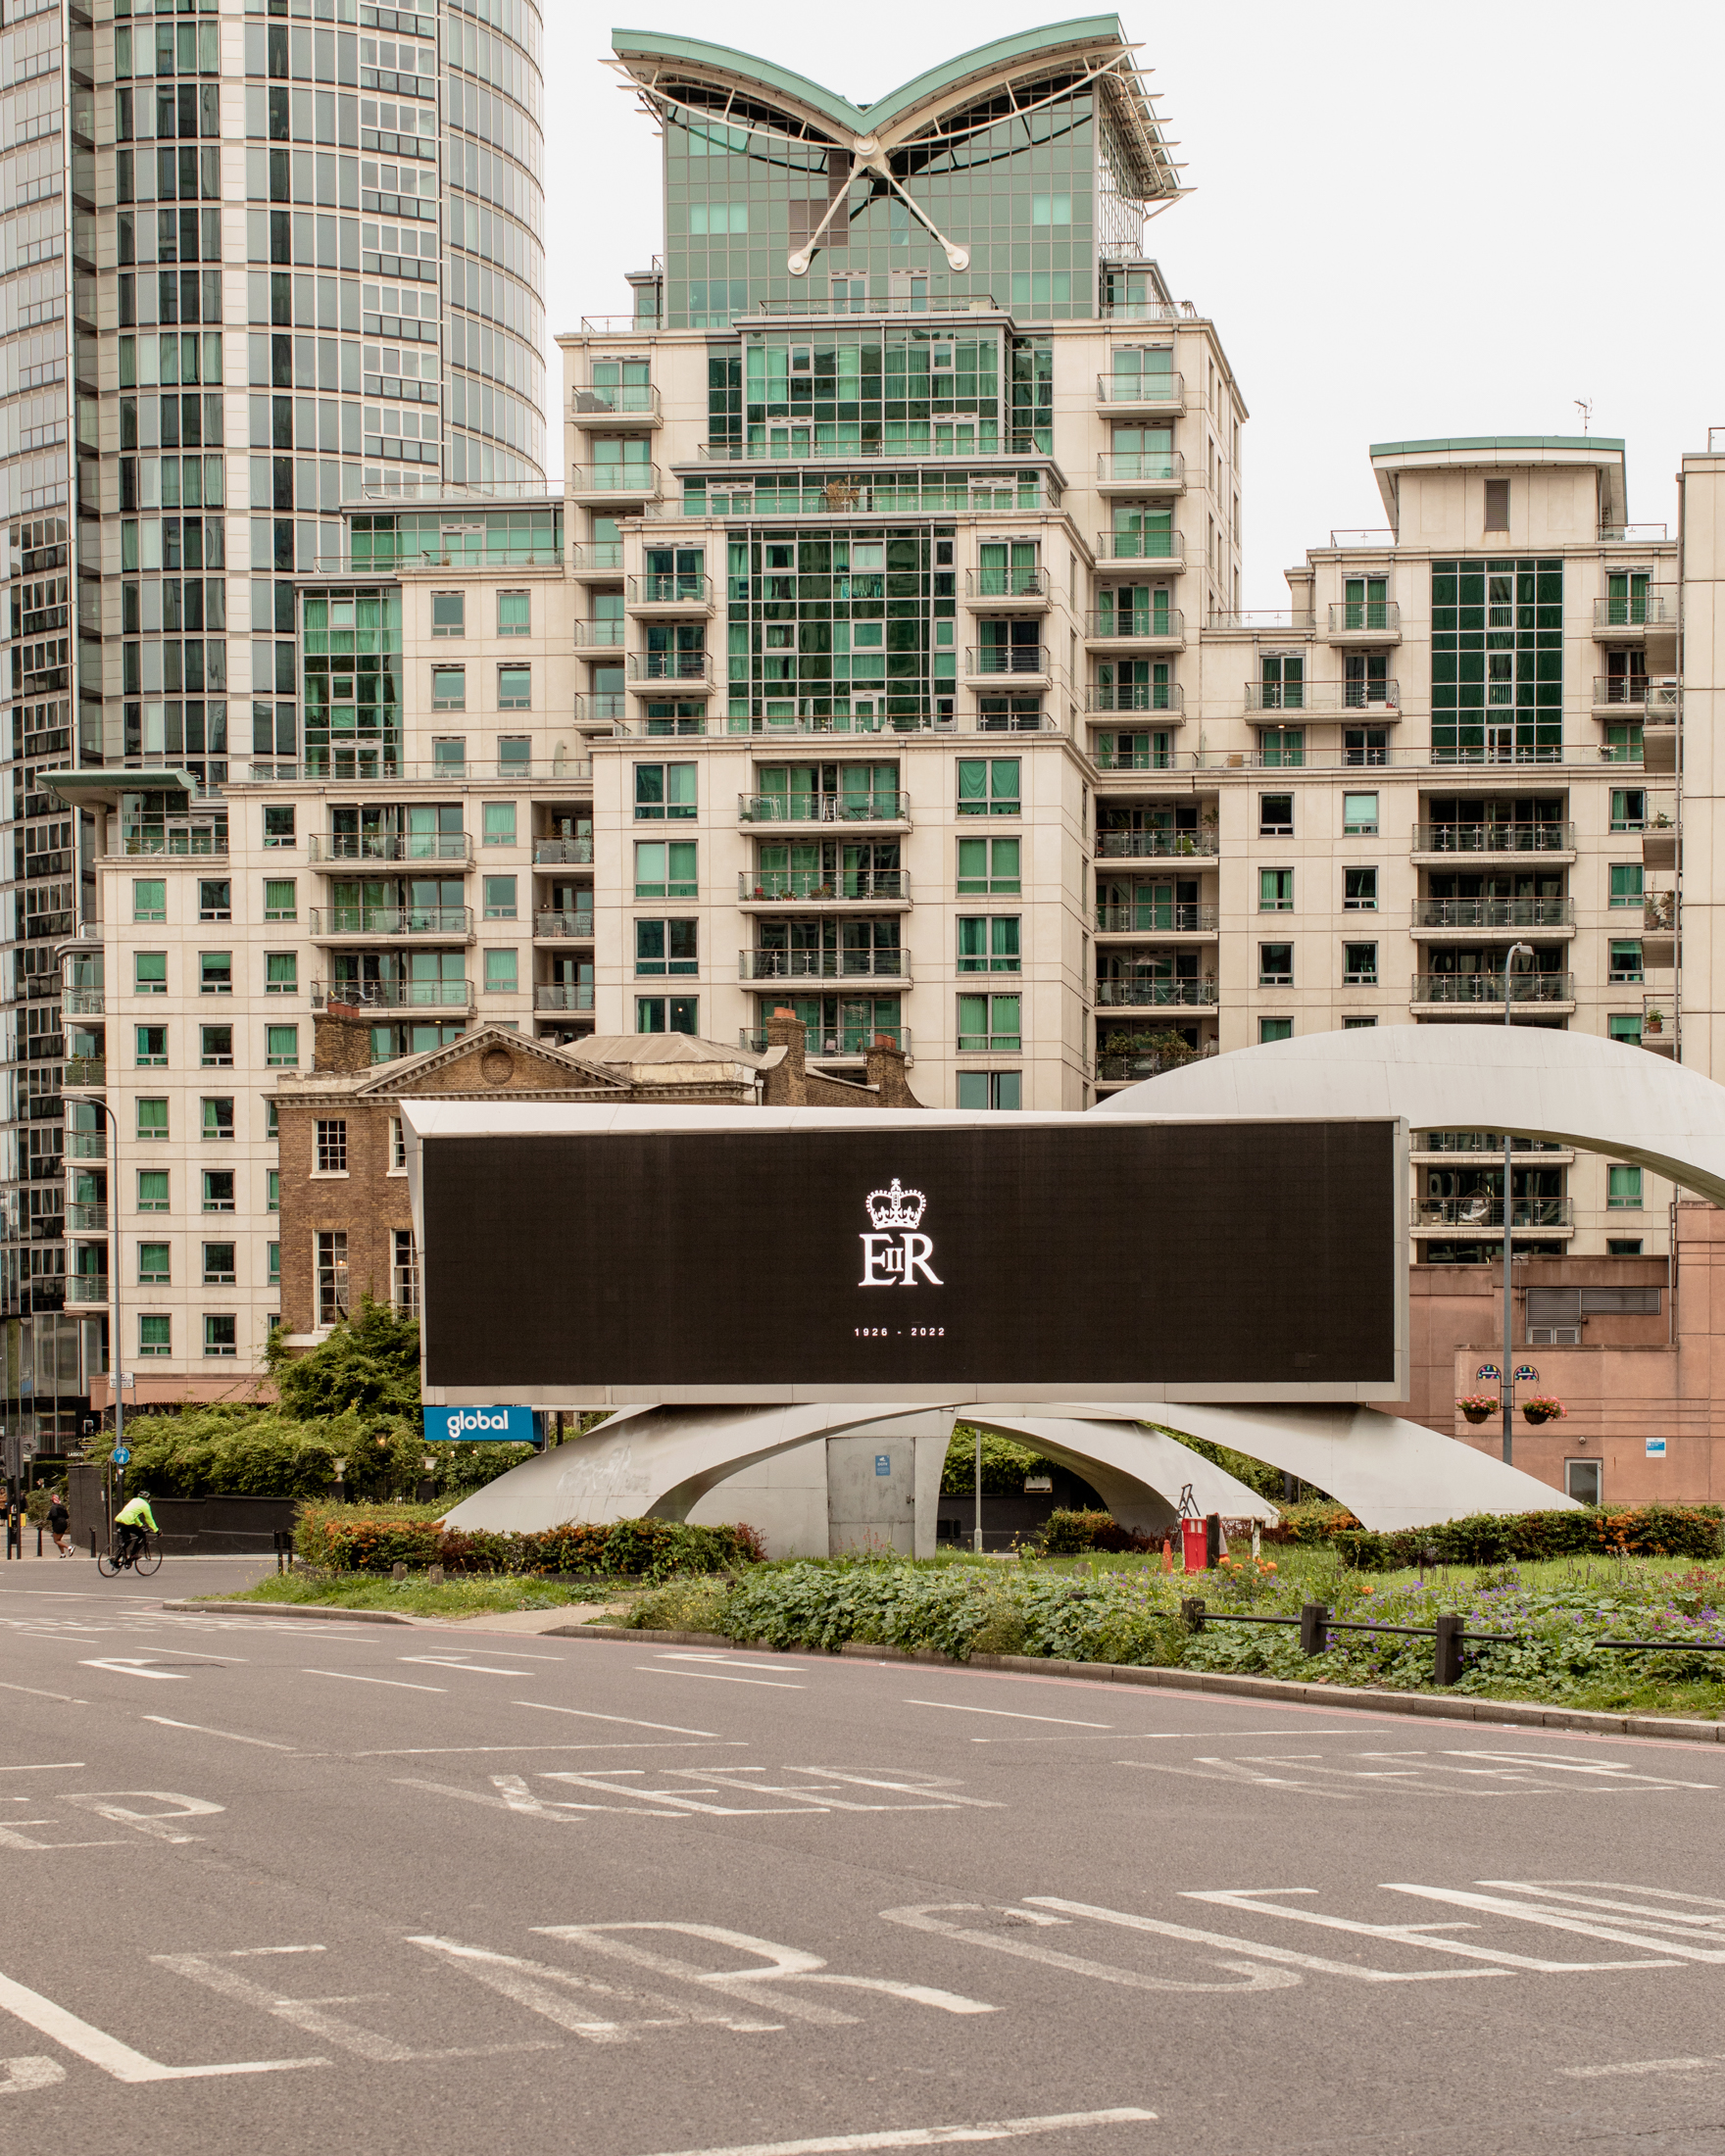 Giant billboard in memory of the Queen in London during Queen Elizabeth II's funeral